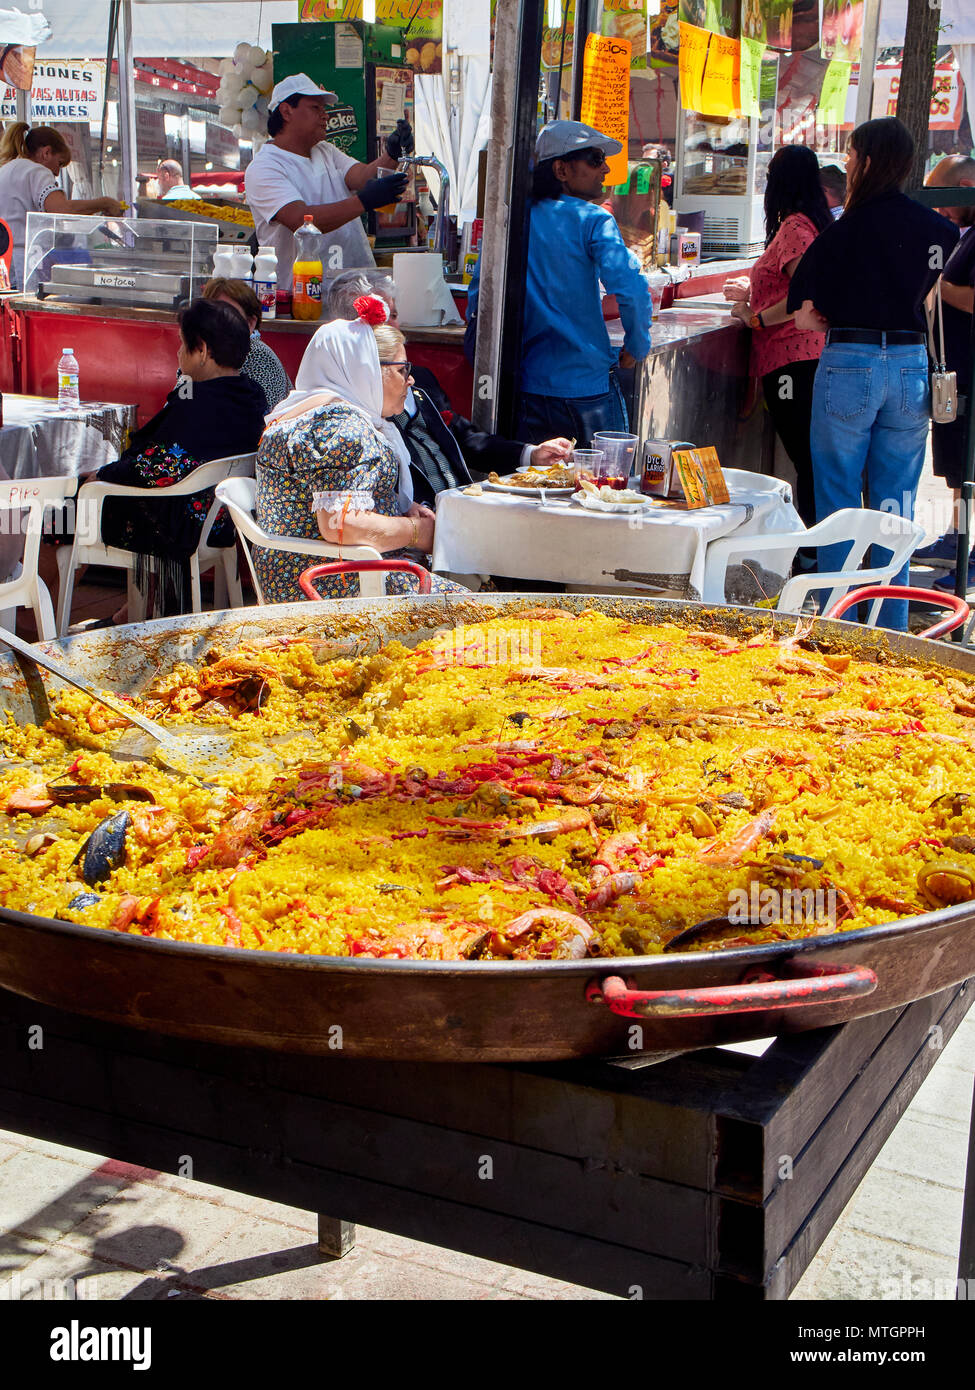 Madrid, Espagne - 15 mai 2018. Habillés comme des citoyens Chulapos manger la Paella espagnole dans un stand à gastronomique fête de San Isidro Labrador, dans Prader Banque D'Images